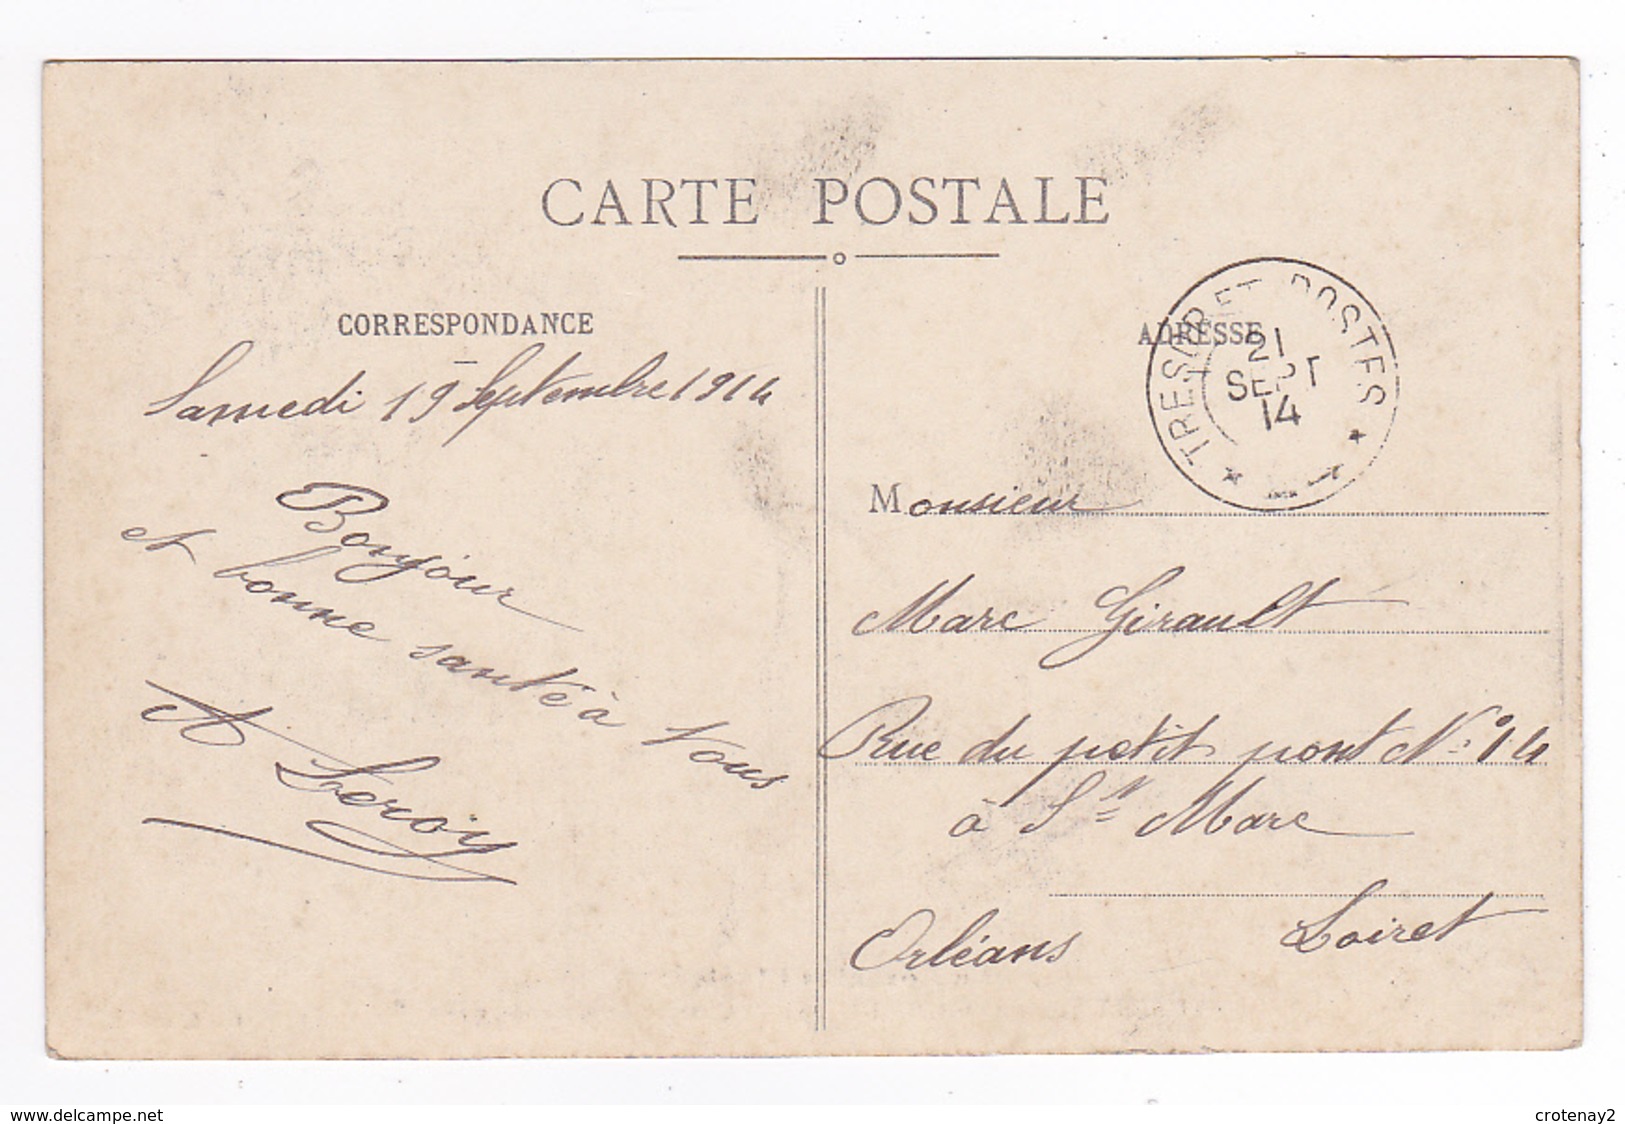 Carte à Situer Gendarmerie Nationale Attelage Chevaux Personnages Bois Envoyée à Orléans En 1914 Par A. LEROY VOIR DOS - A Identifier